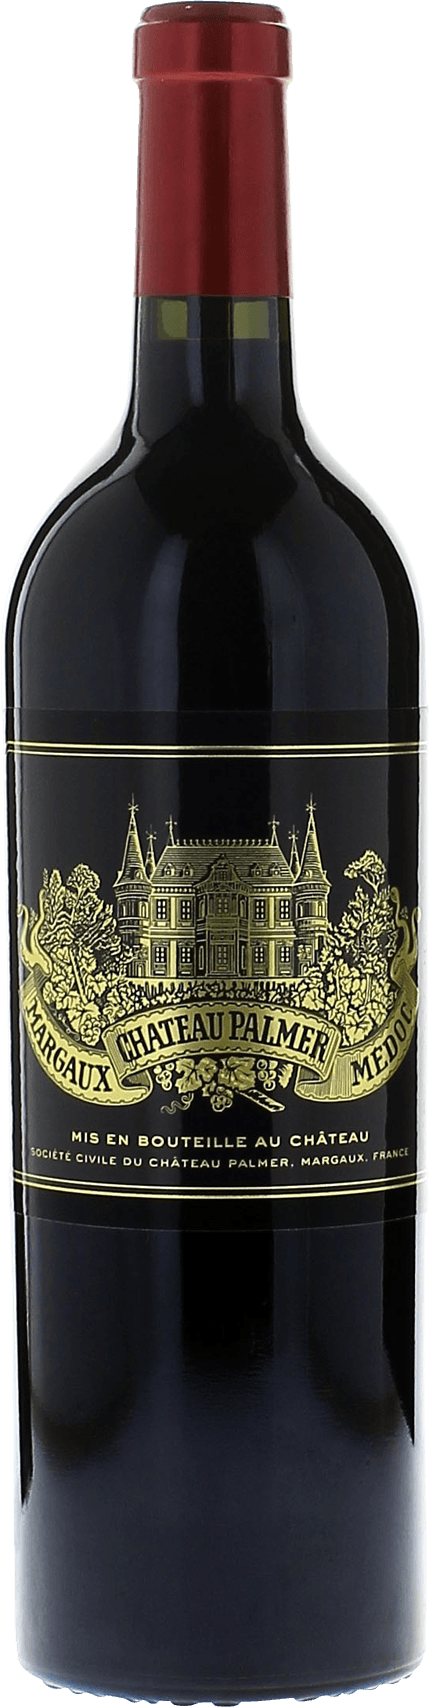 Palmer 2017 3me Grand cru class Margaux, Bordeaux rouge